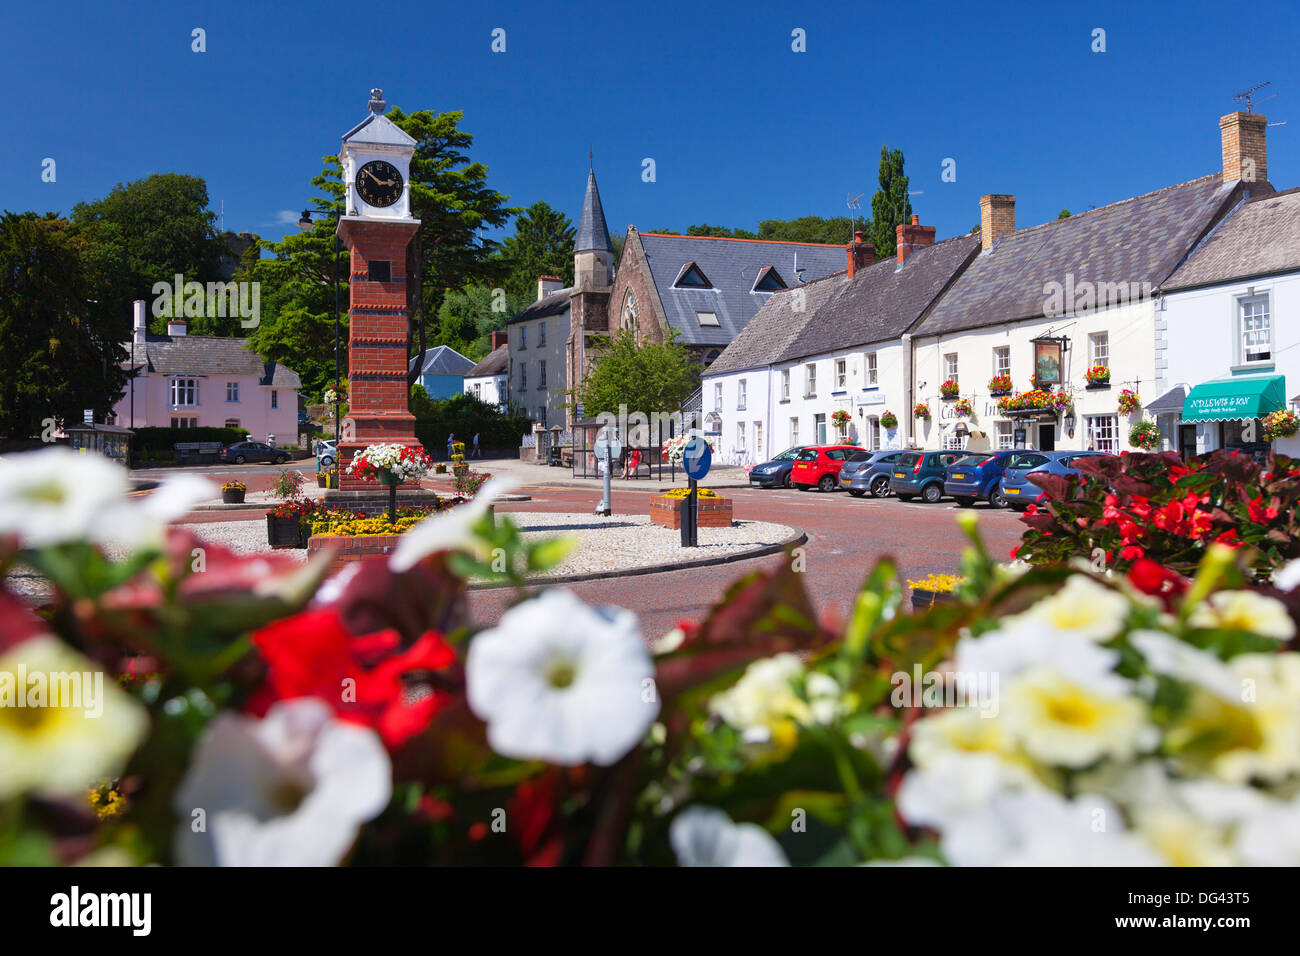 Usk Twyn Square, Usk, Monmouthshire, Wales, United Kingdom, Europe Stock Photo